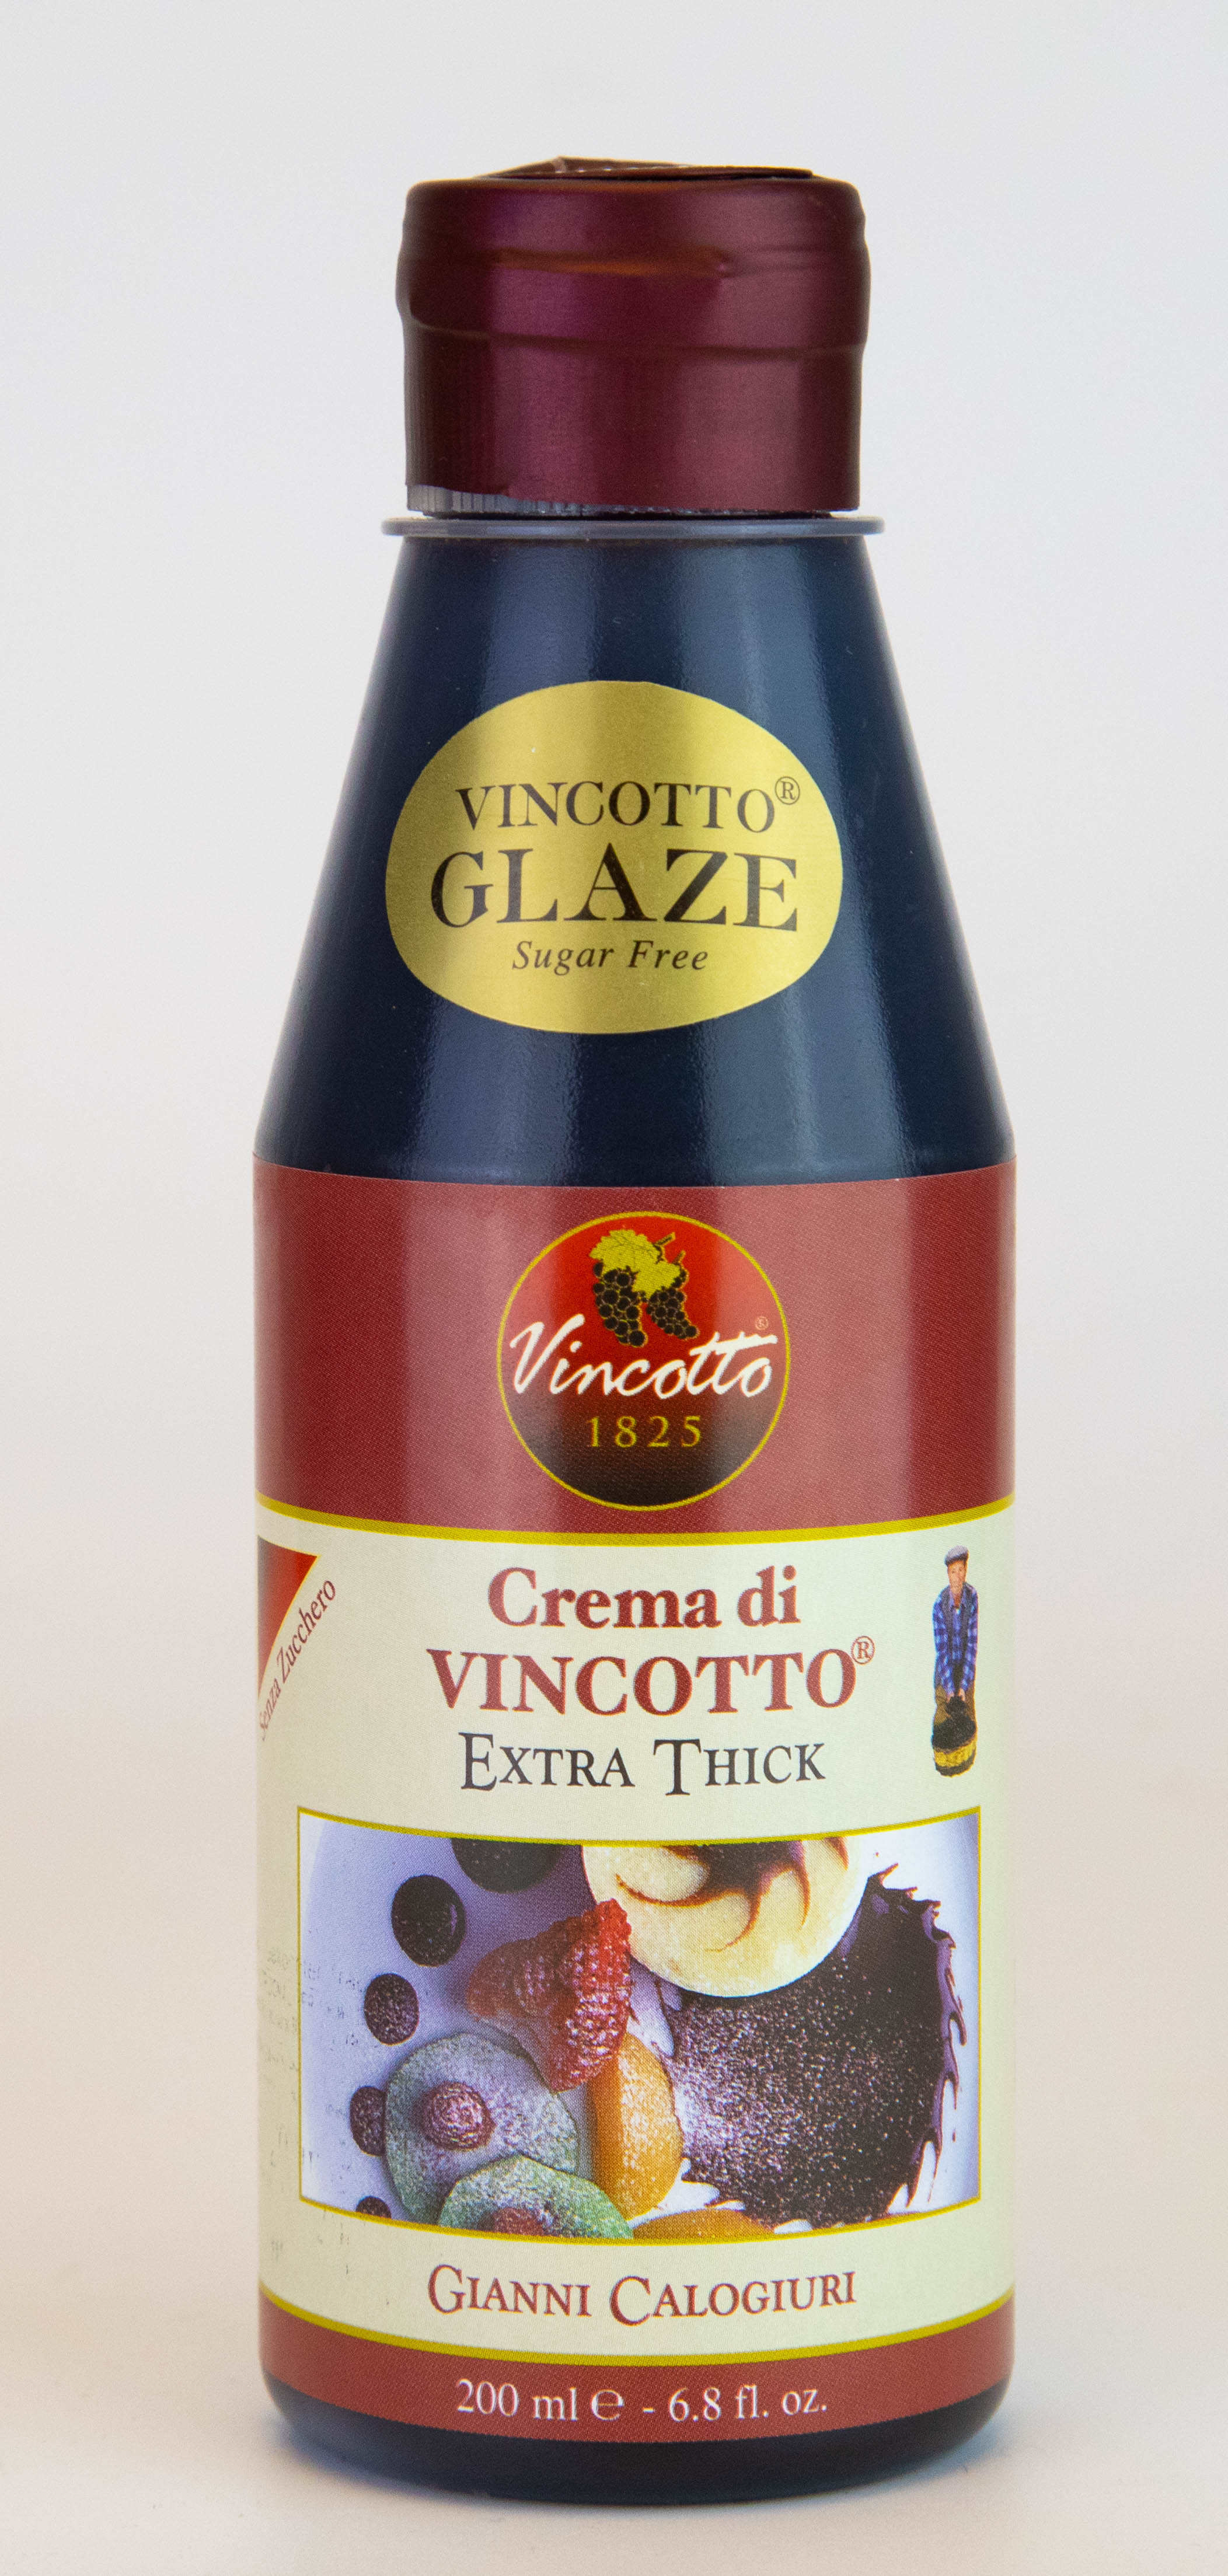 Crema di Vincotto originale 200ml Flasche